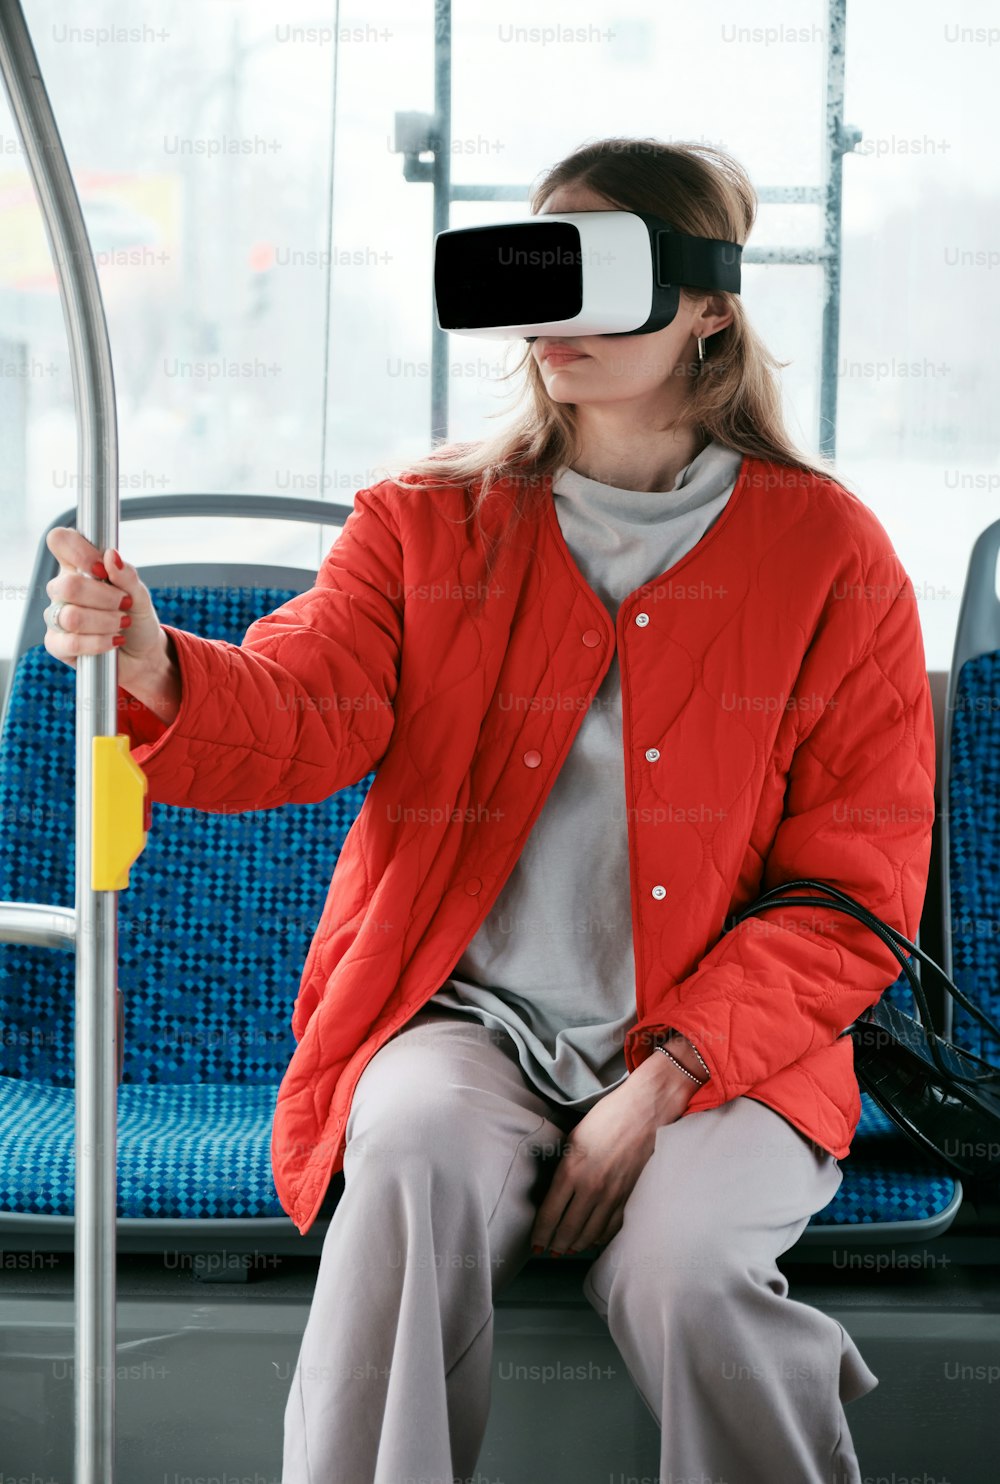 Una donna seduta su un autobus che indossa un paio di occhiali virtuali